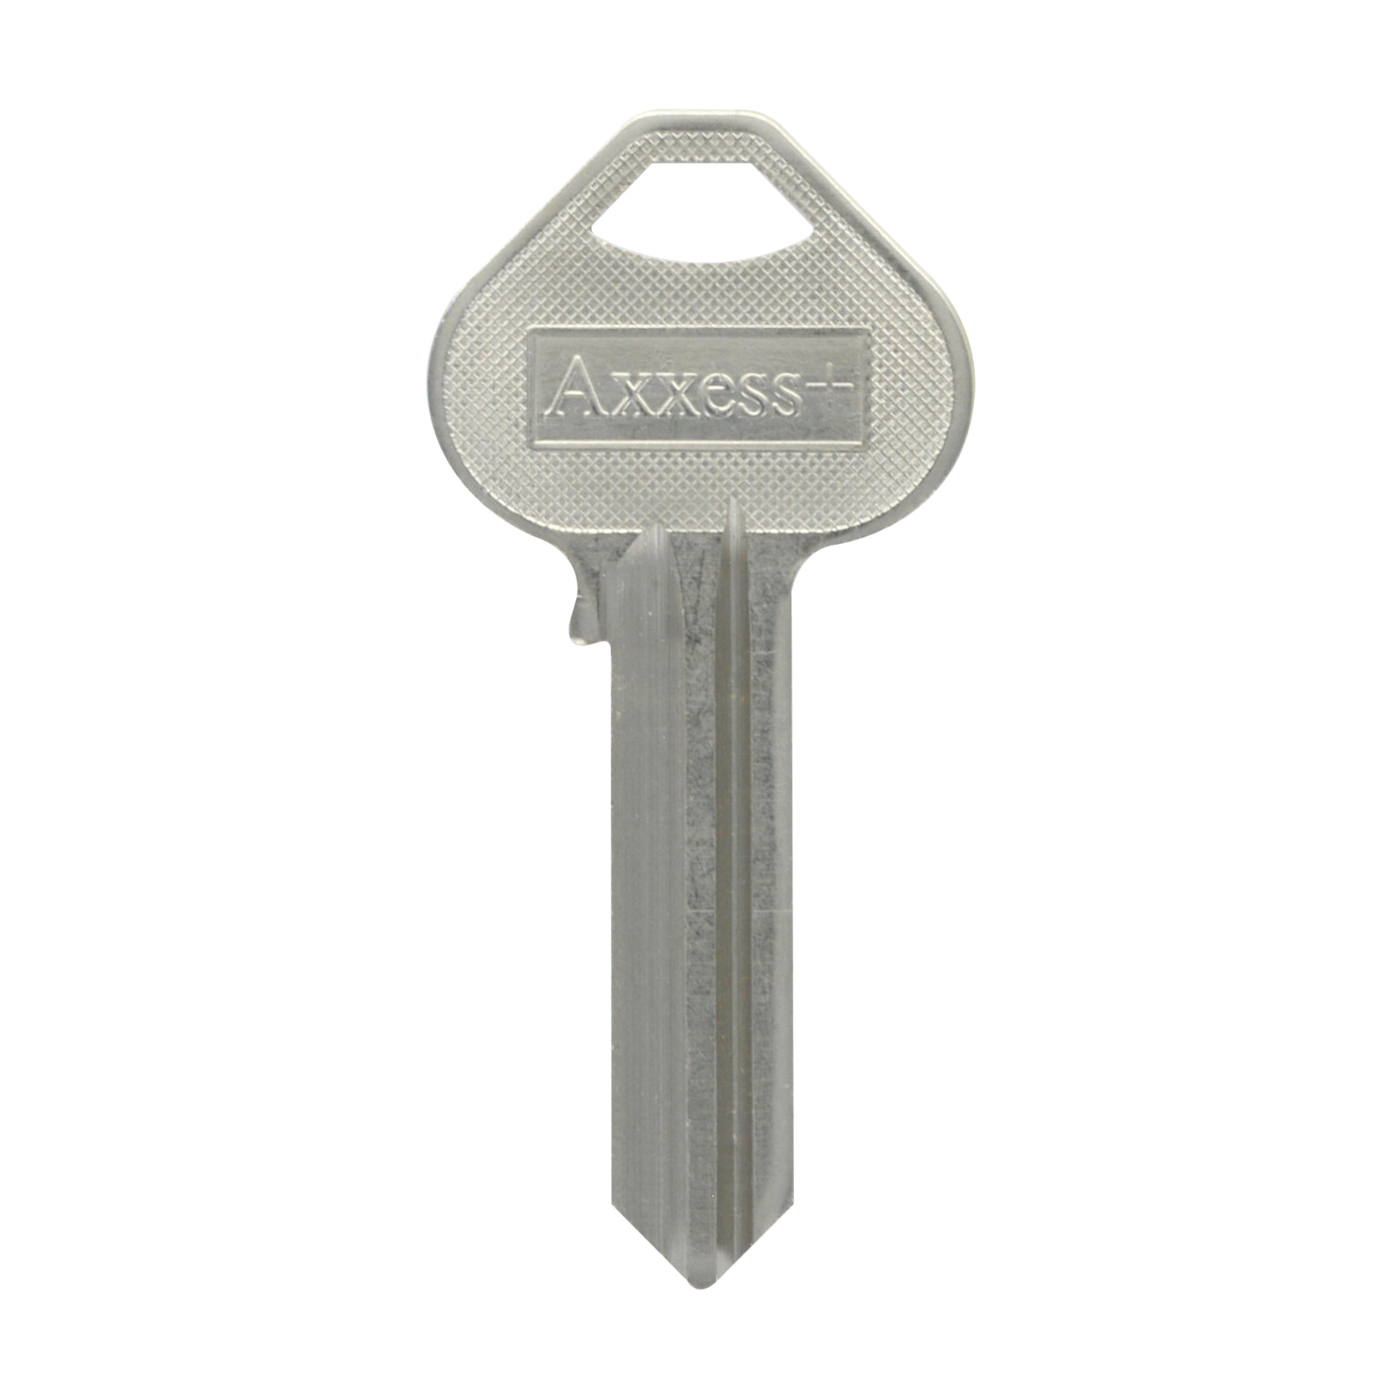 88084 Key Blank, Brass, Nickel-Plated, For: Corbin Russwin Locks